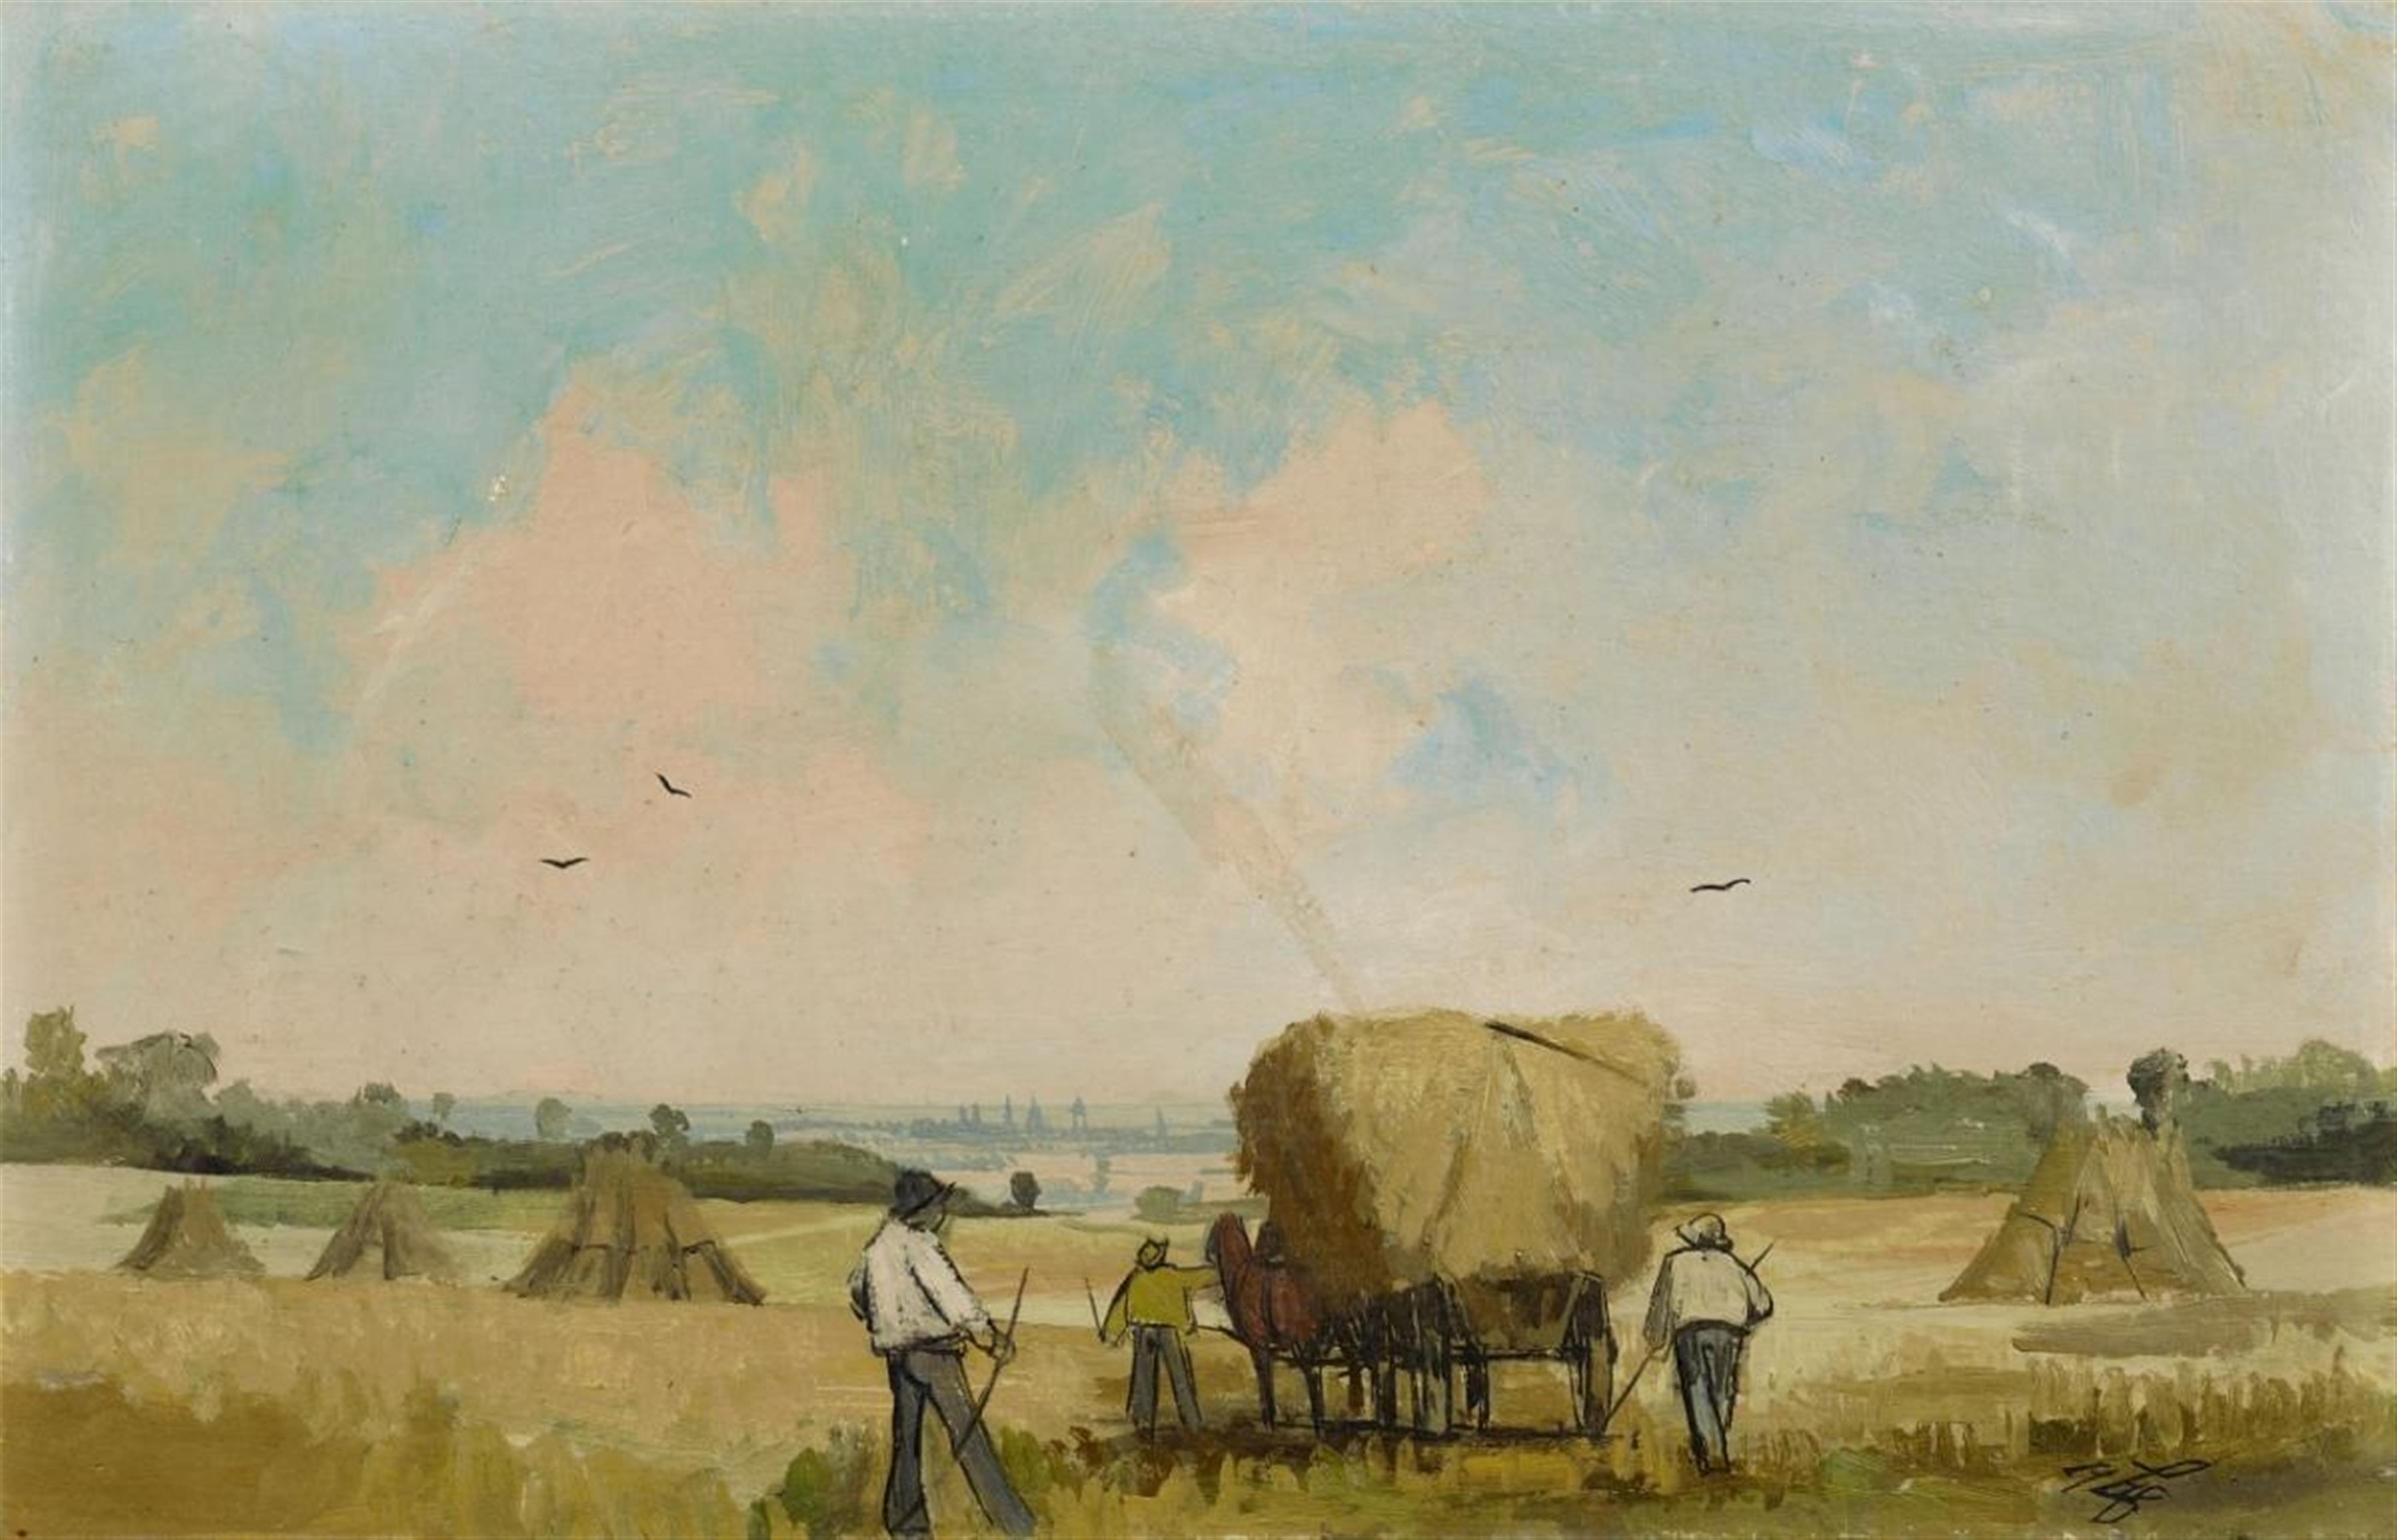 Eberhard Viegener - Erntetag in der Soester Börde (Harvesting in the Countryside of Soest) - image-1